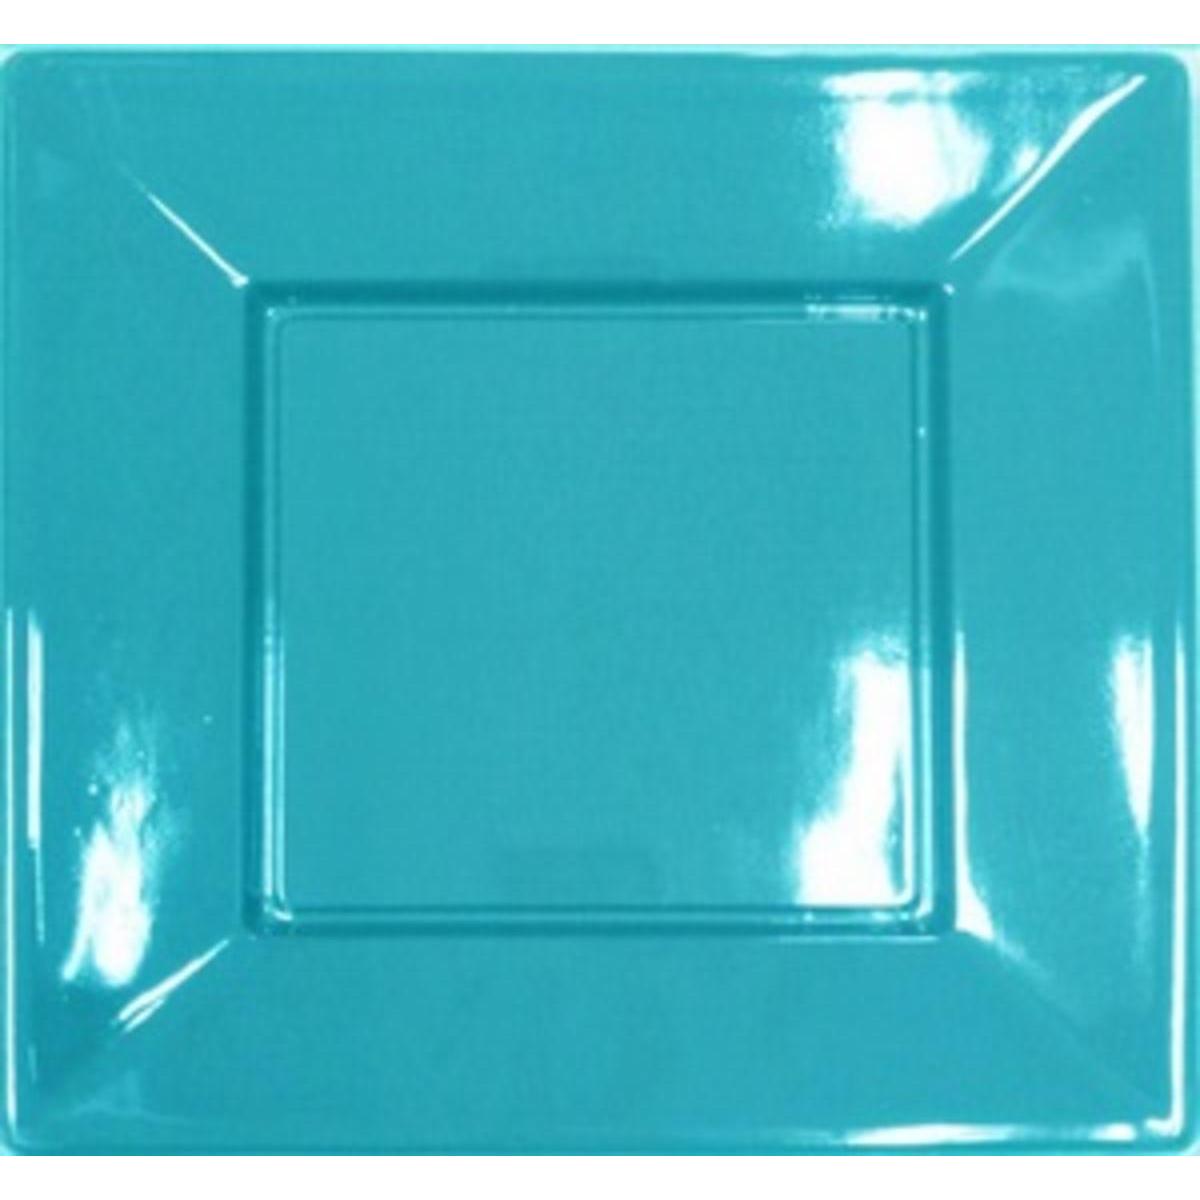 Extiff Lot de 25 Assiettes Colorées en Plastique Recyclable Turquoise, 18 x 18 cm Dimensions et Couleurs au Choix